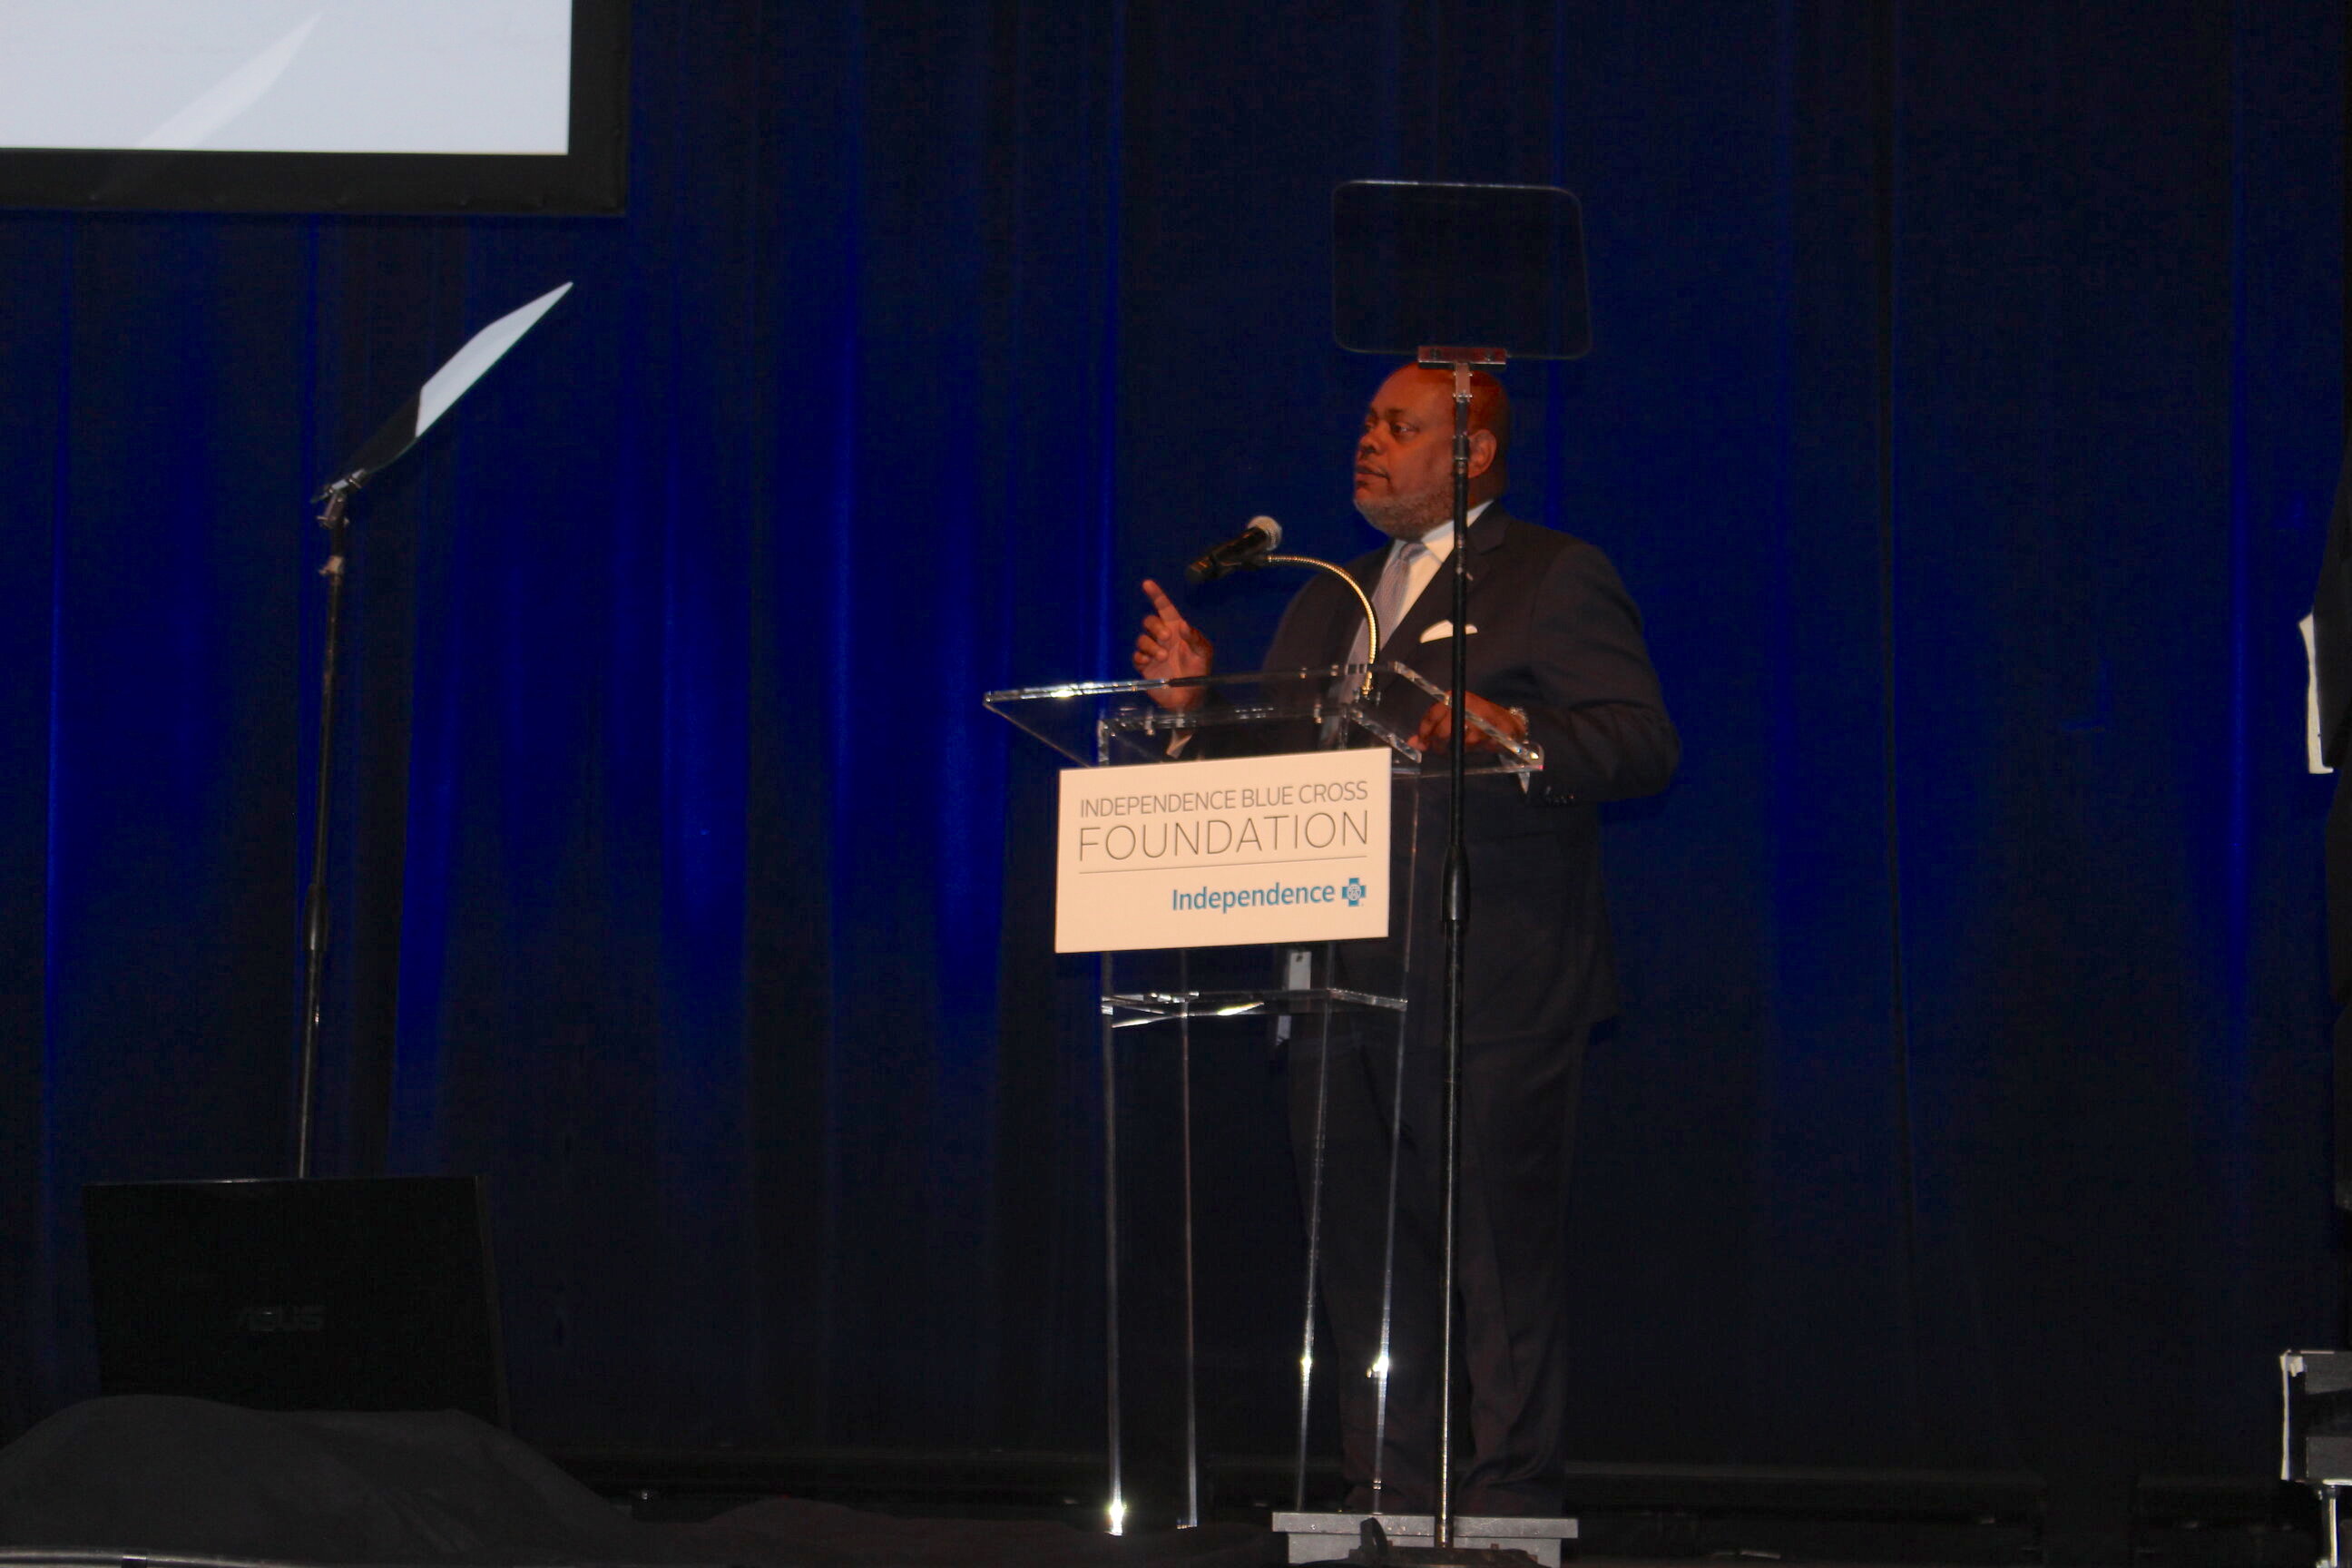 Gregory E. Deavens, Presidente y Director General de Independence Blue Cross, anuncia el lanzamiento del Instituto para la Equidad Sanitaria. Foto: Jensen Toussaint/AL DÍA News.